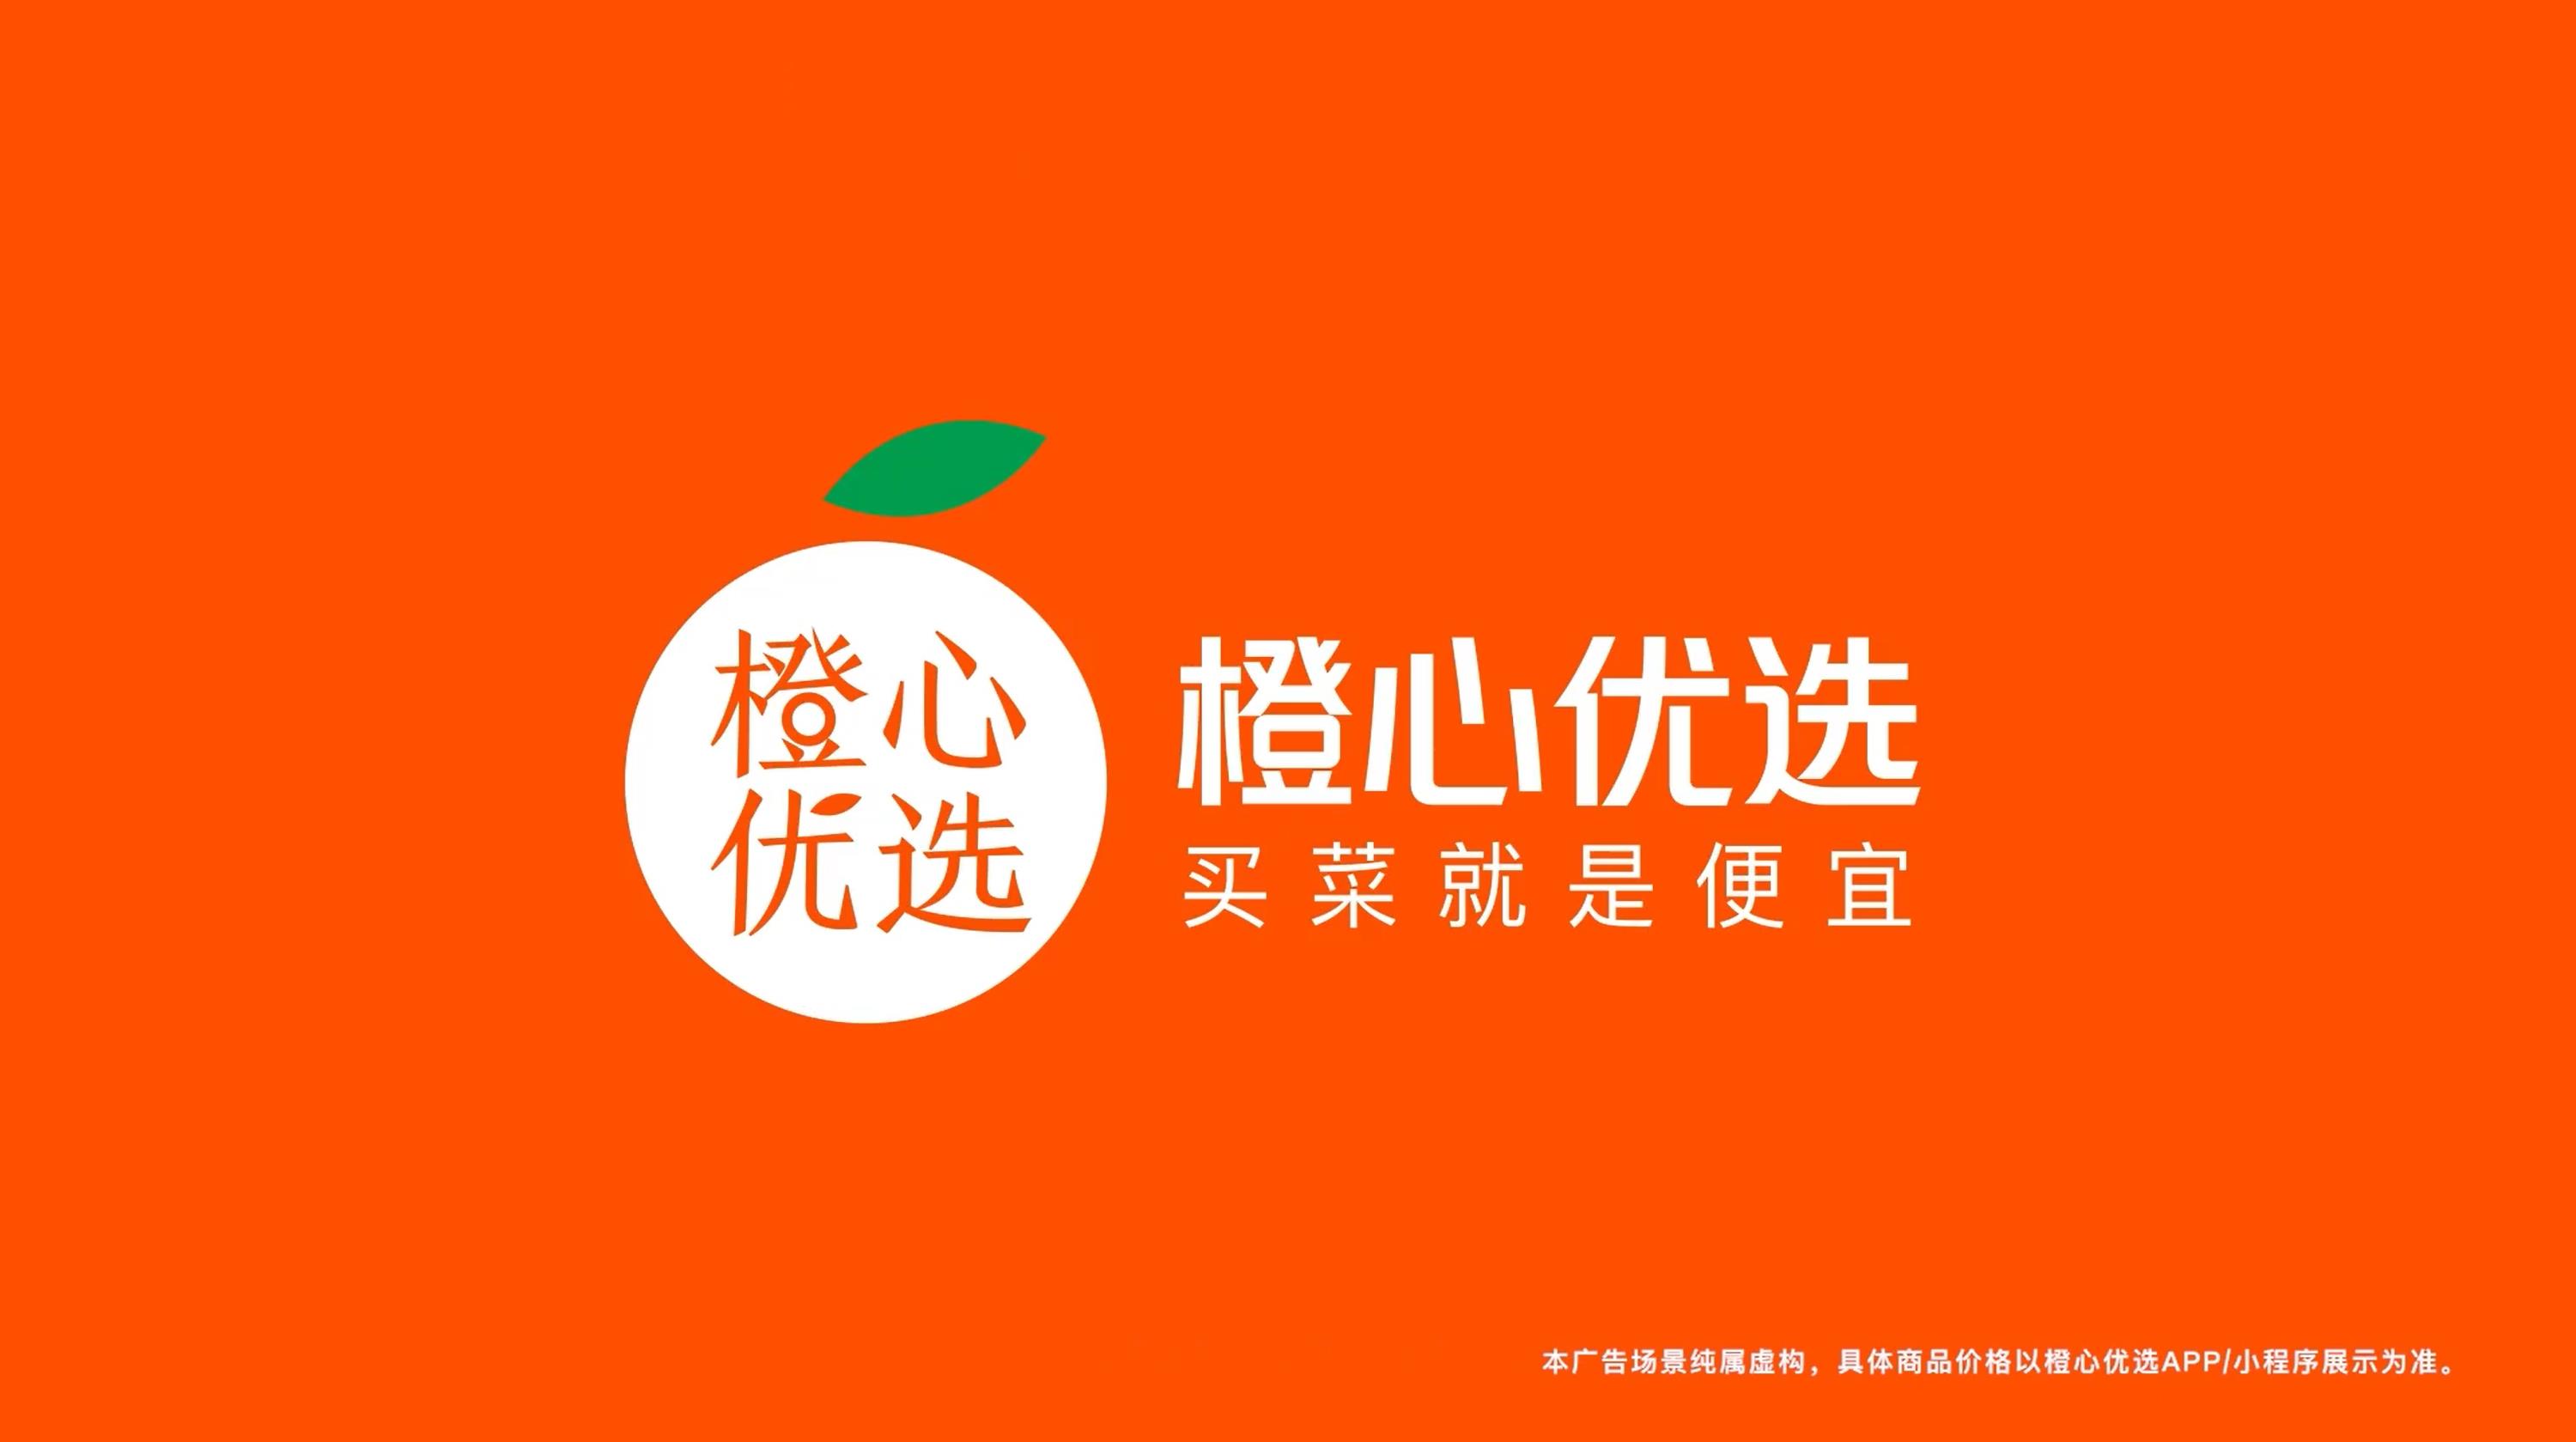 橙心优选logo高清图片